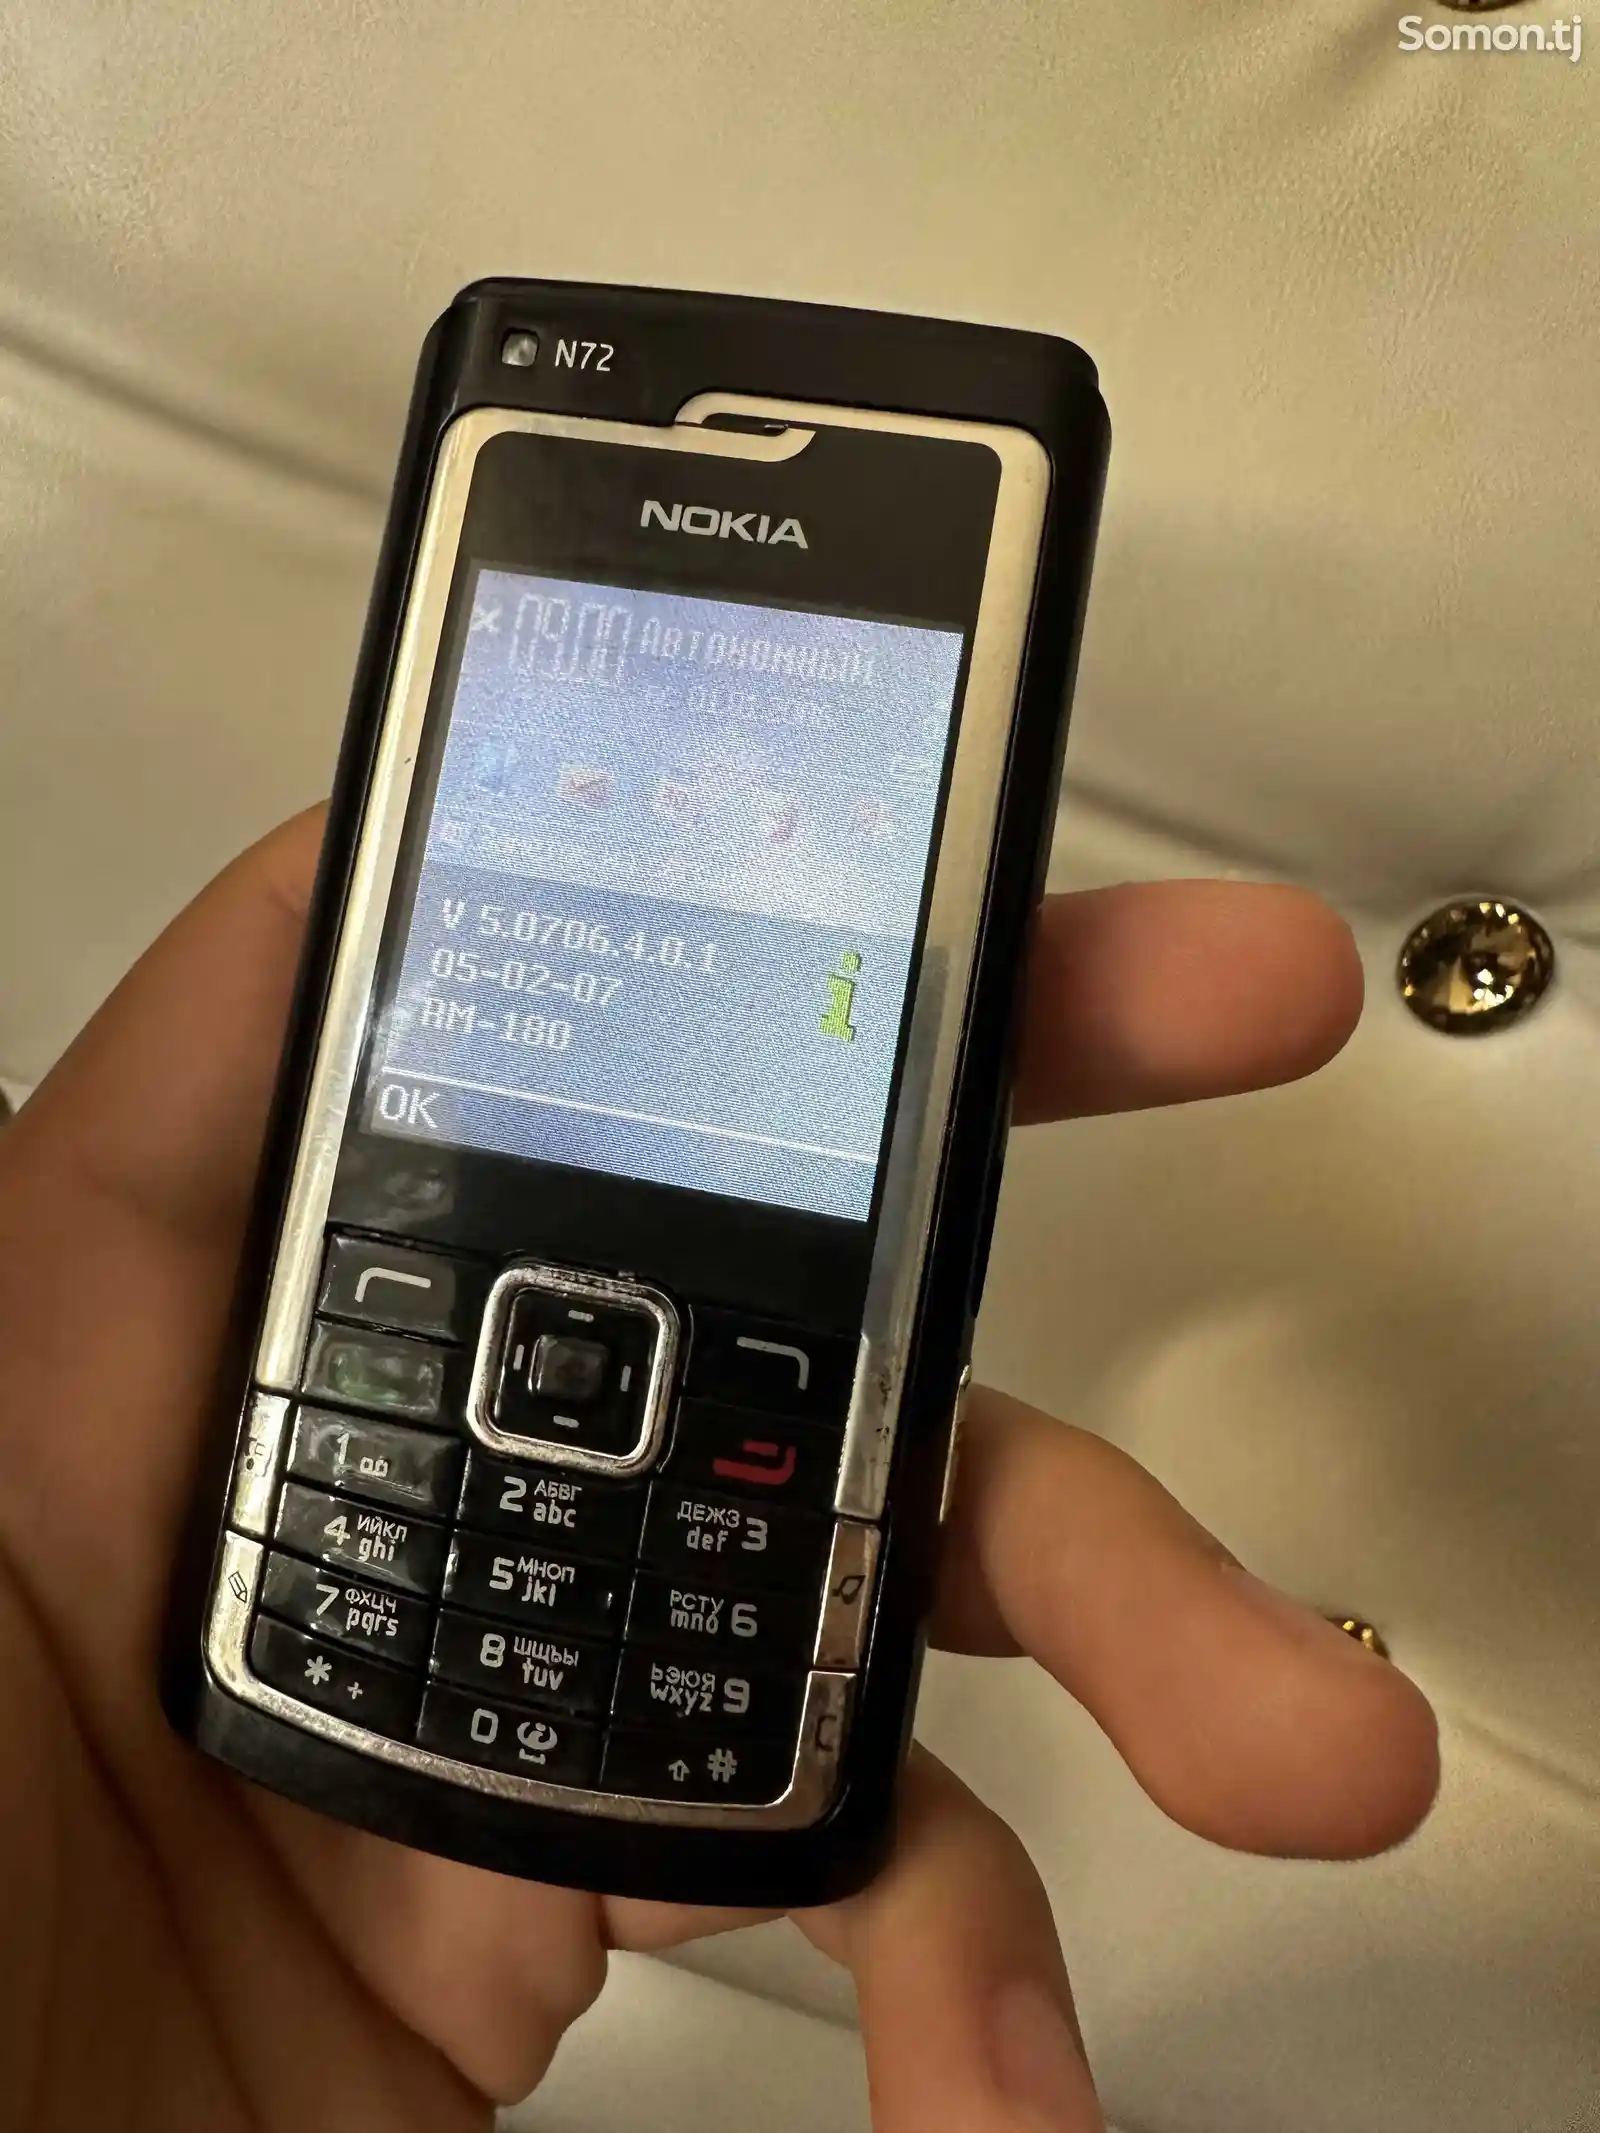 Nokia N72, Black-7